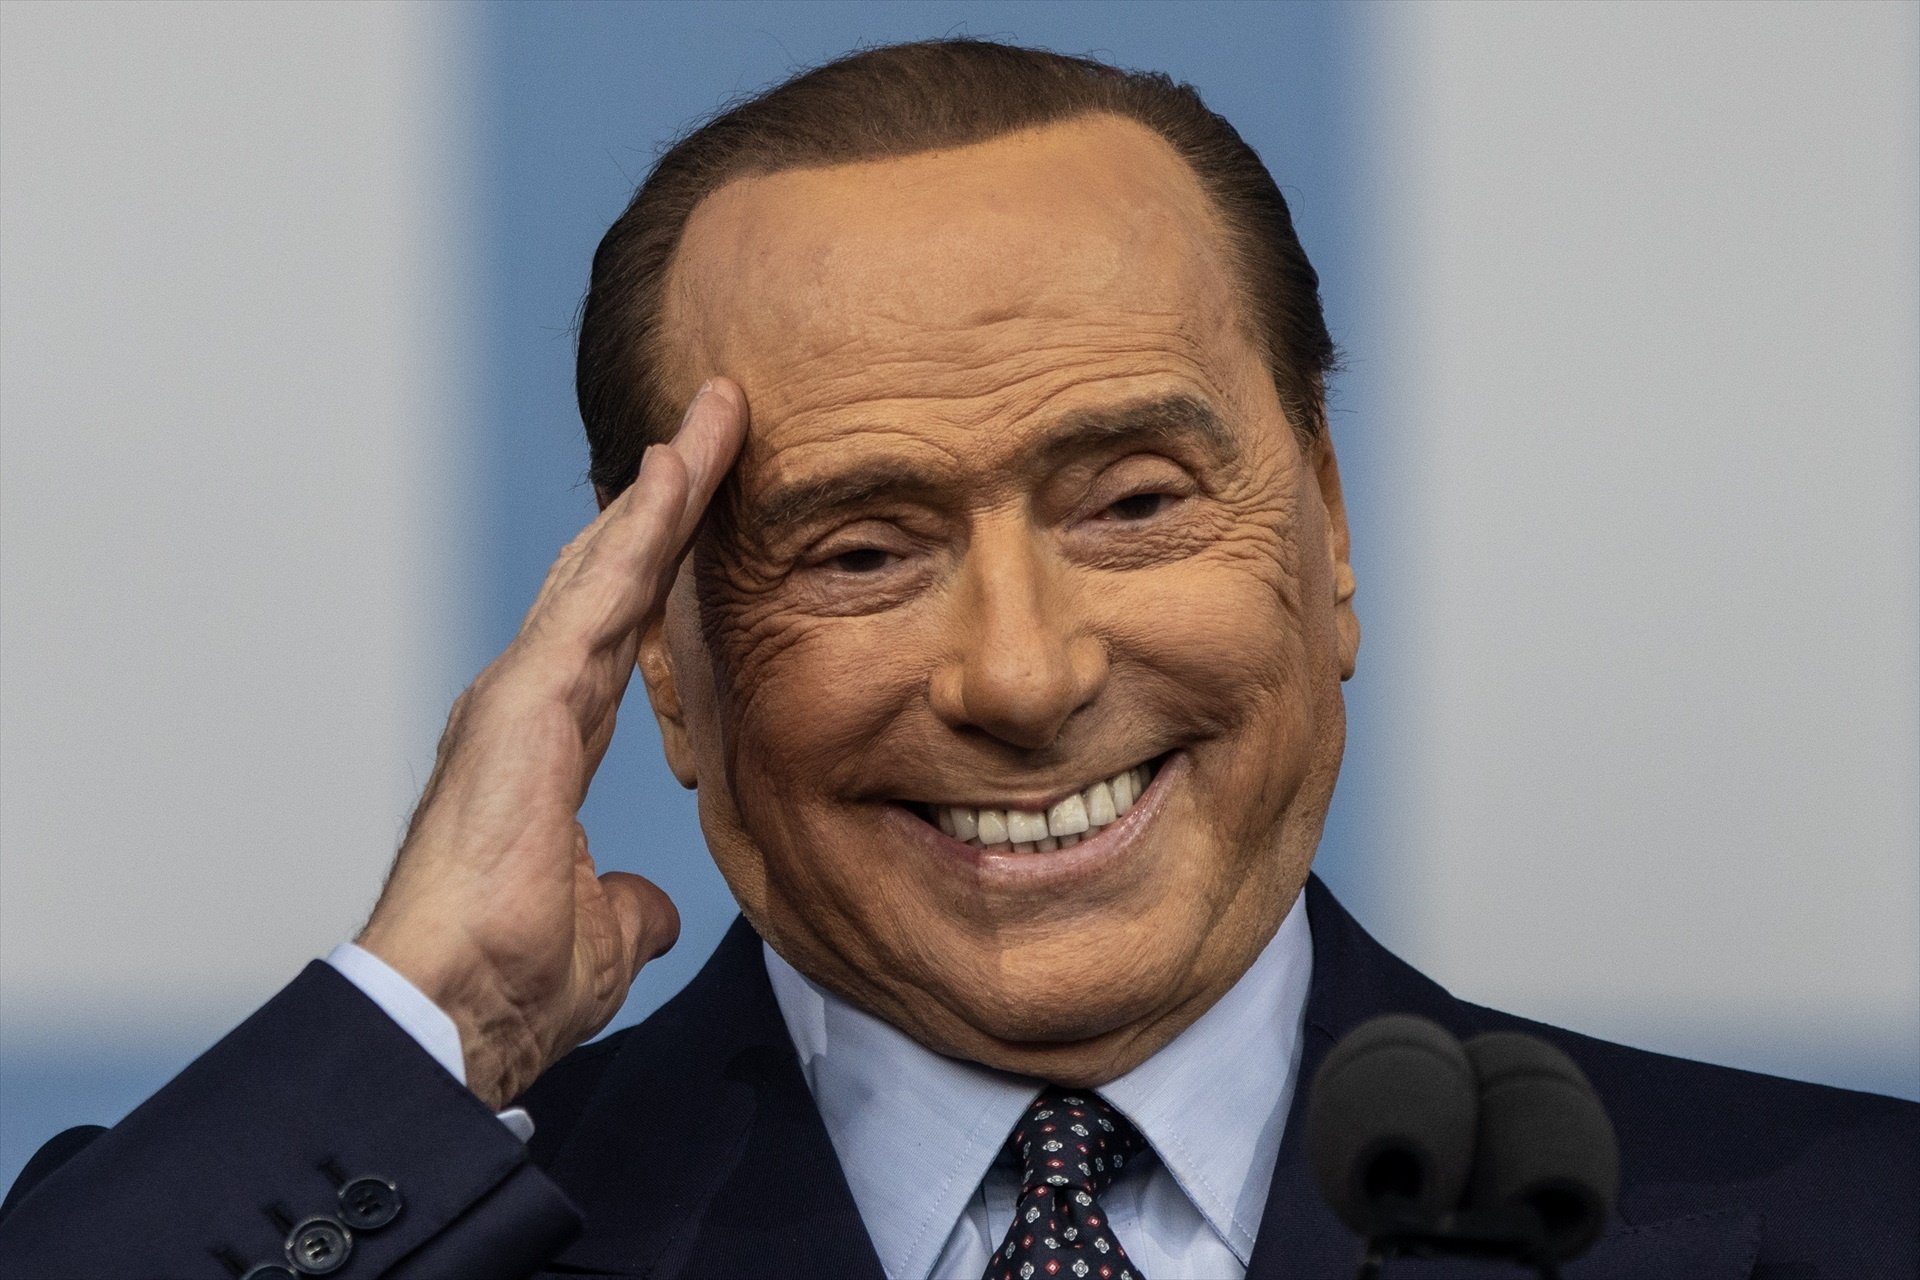 Les empreses de Berlusconi es disparen a la borsa després de la mort de l'empresari